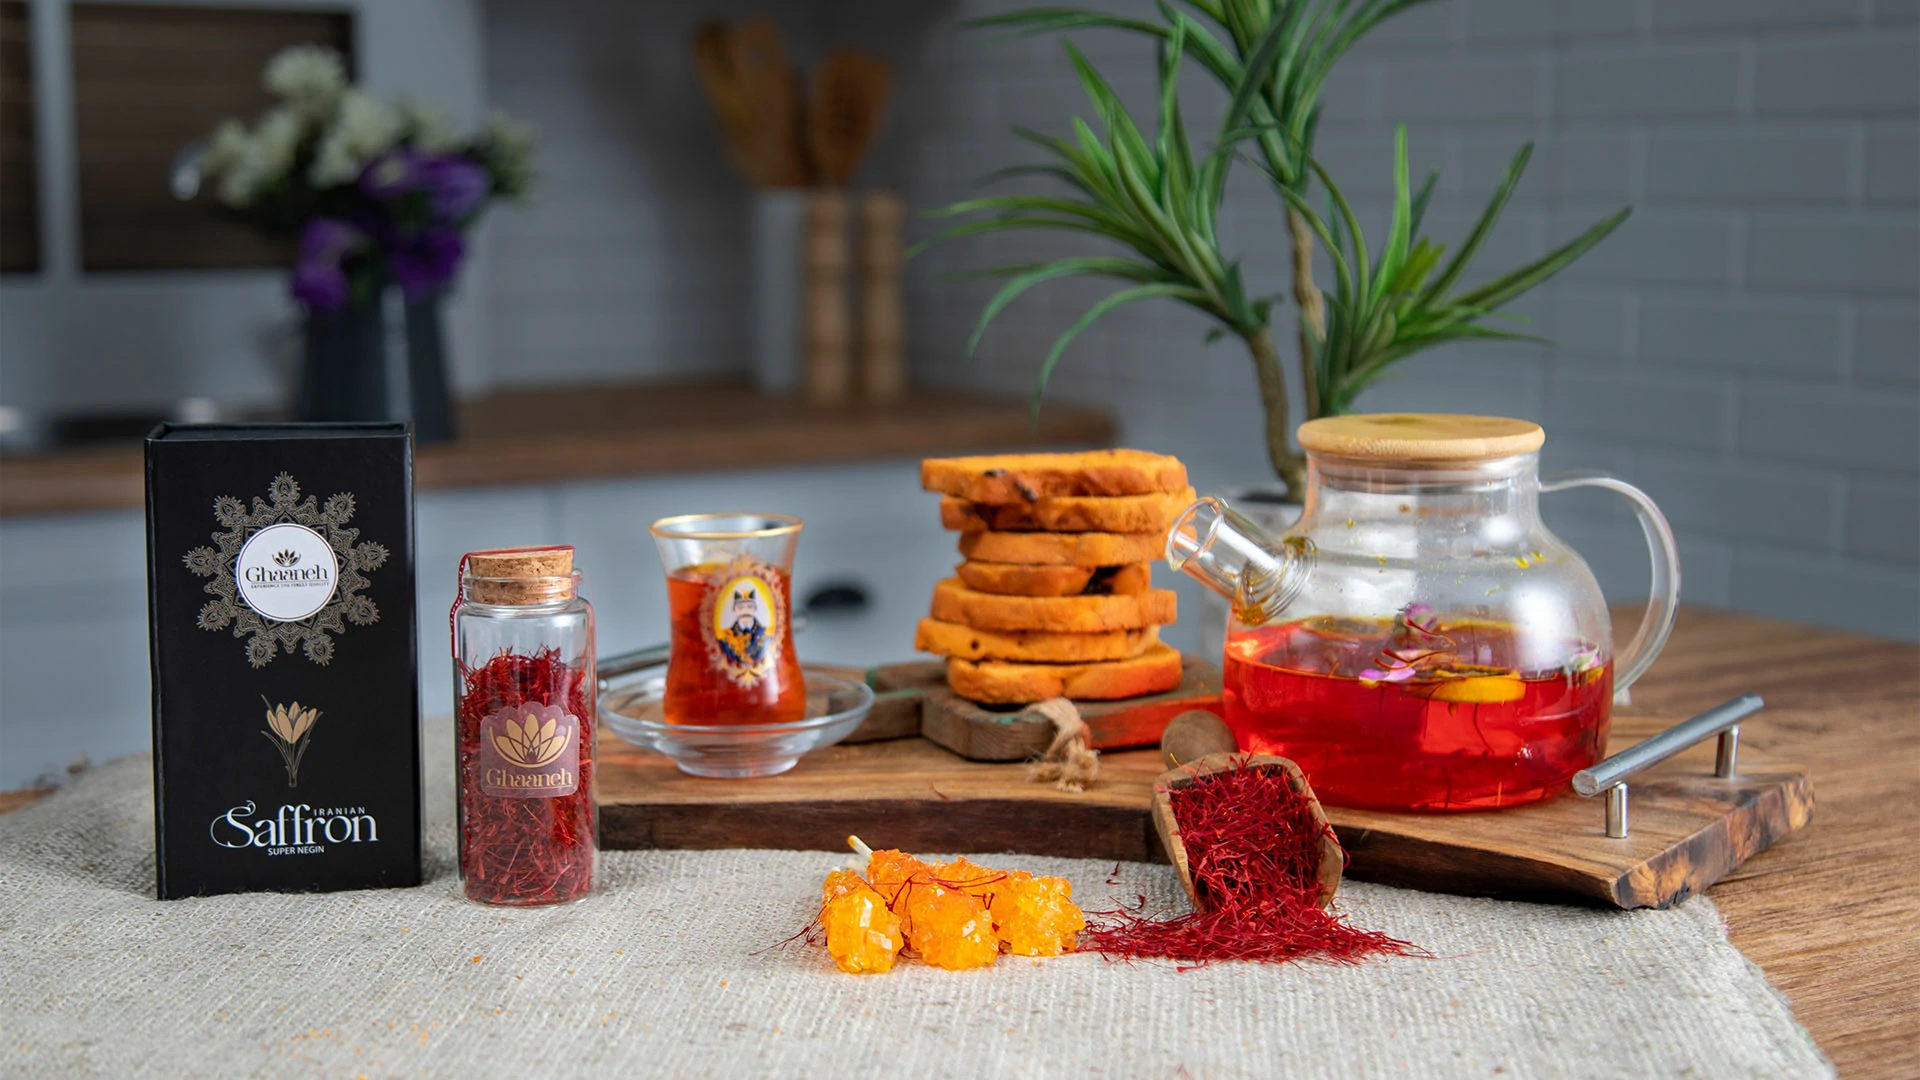 saffron tea recipe and its benefits